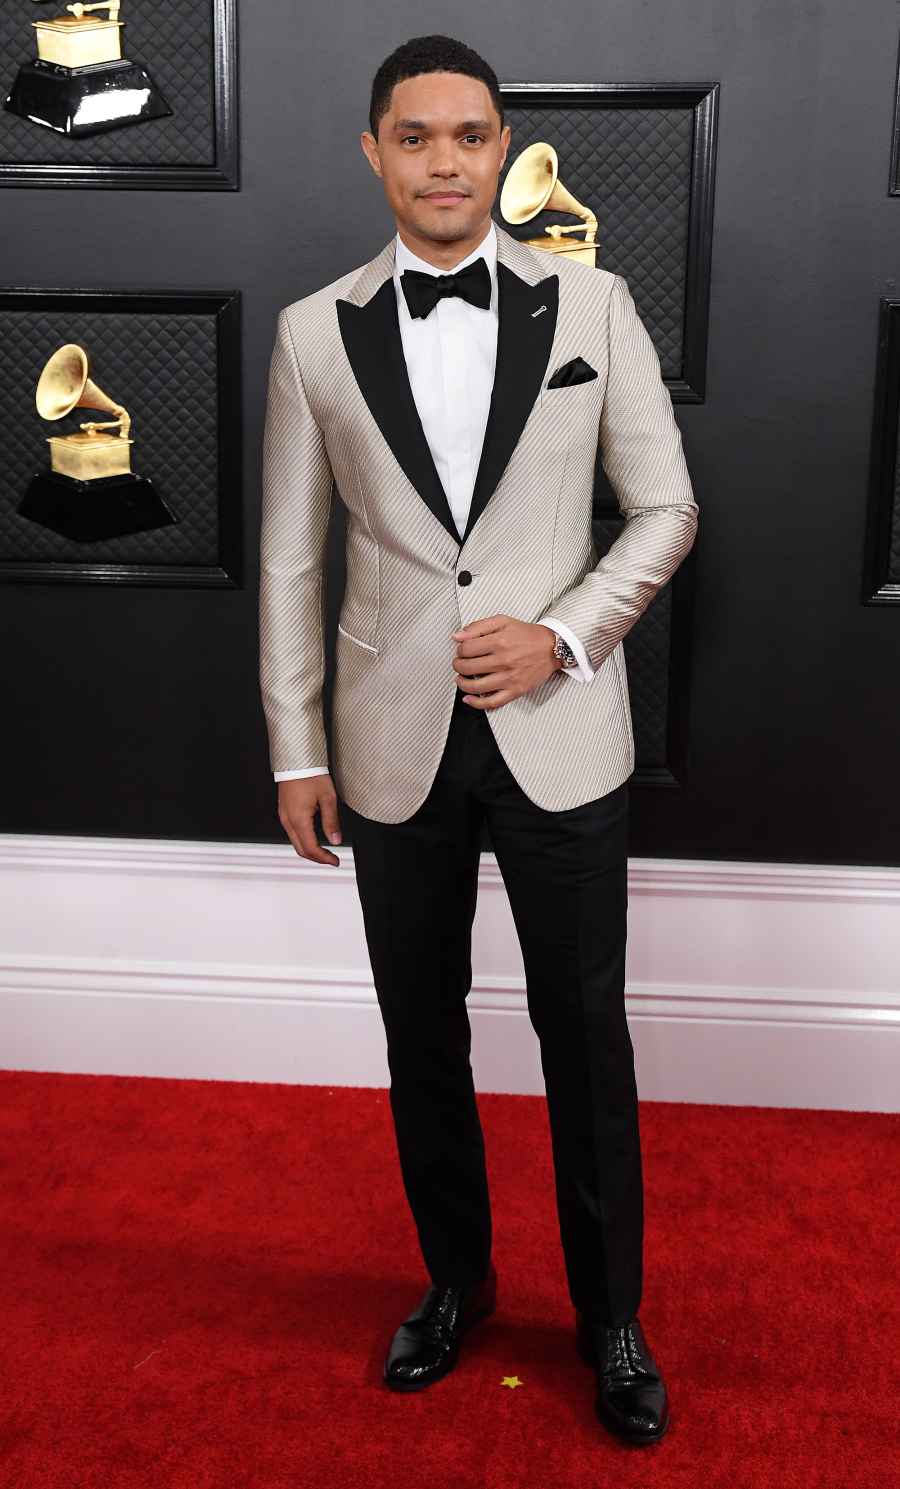 Grammy Awards 2020 Hottest Hunks - Trevor Noah